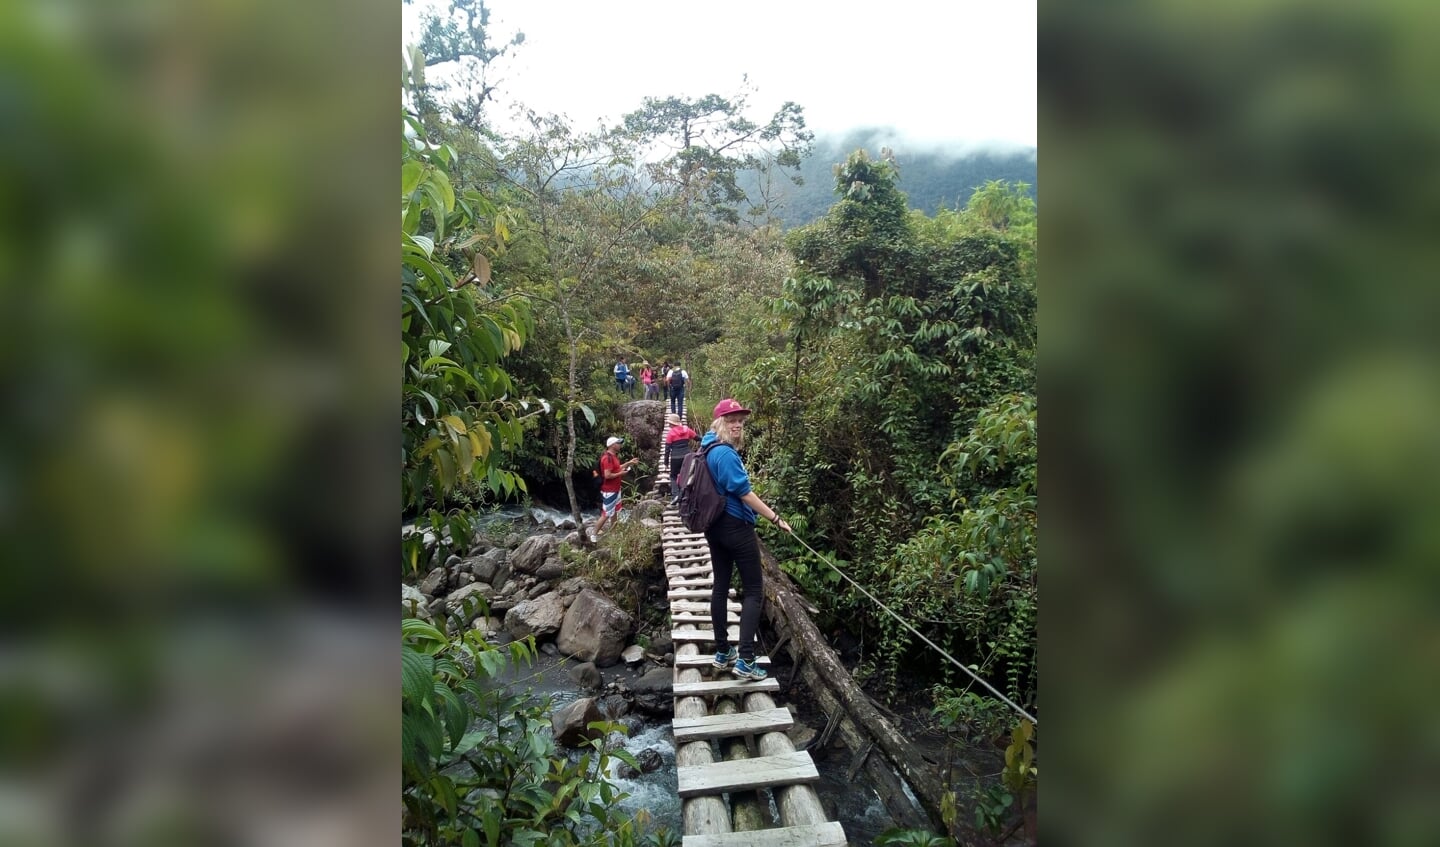 Ariët op een loopbrug, op weg naar beroemde watervallen in Colombia. Foto: PR